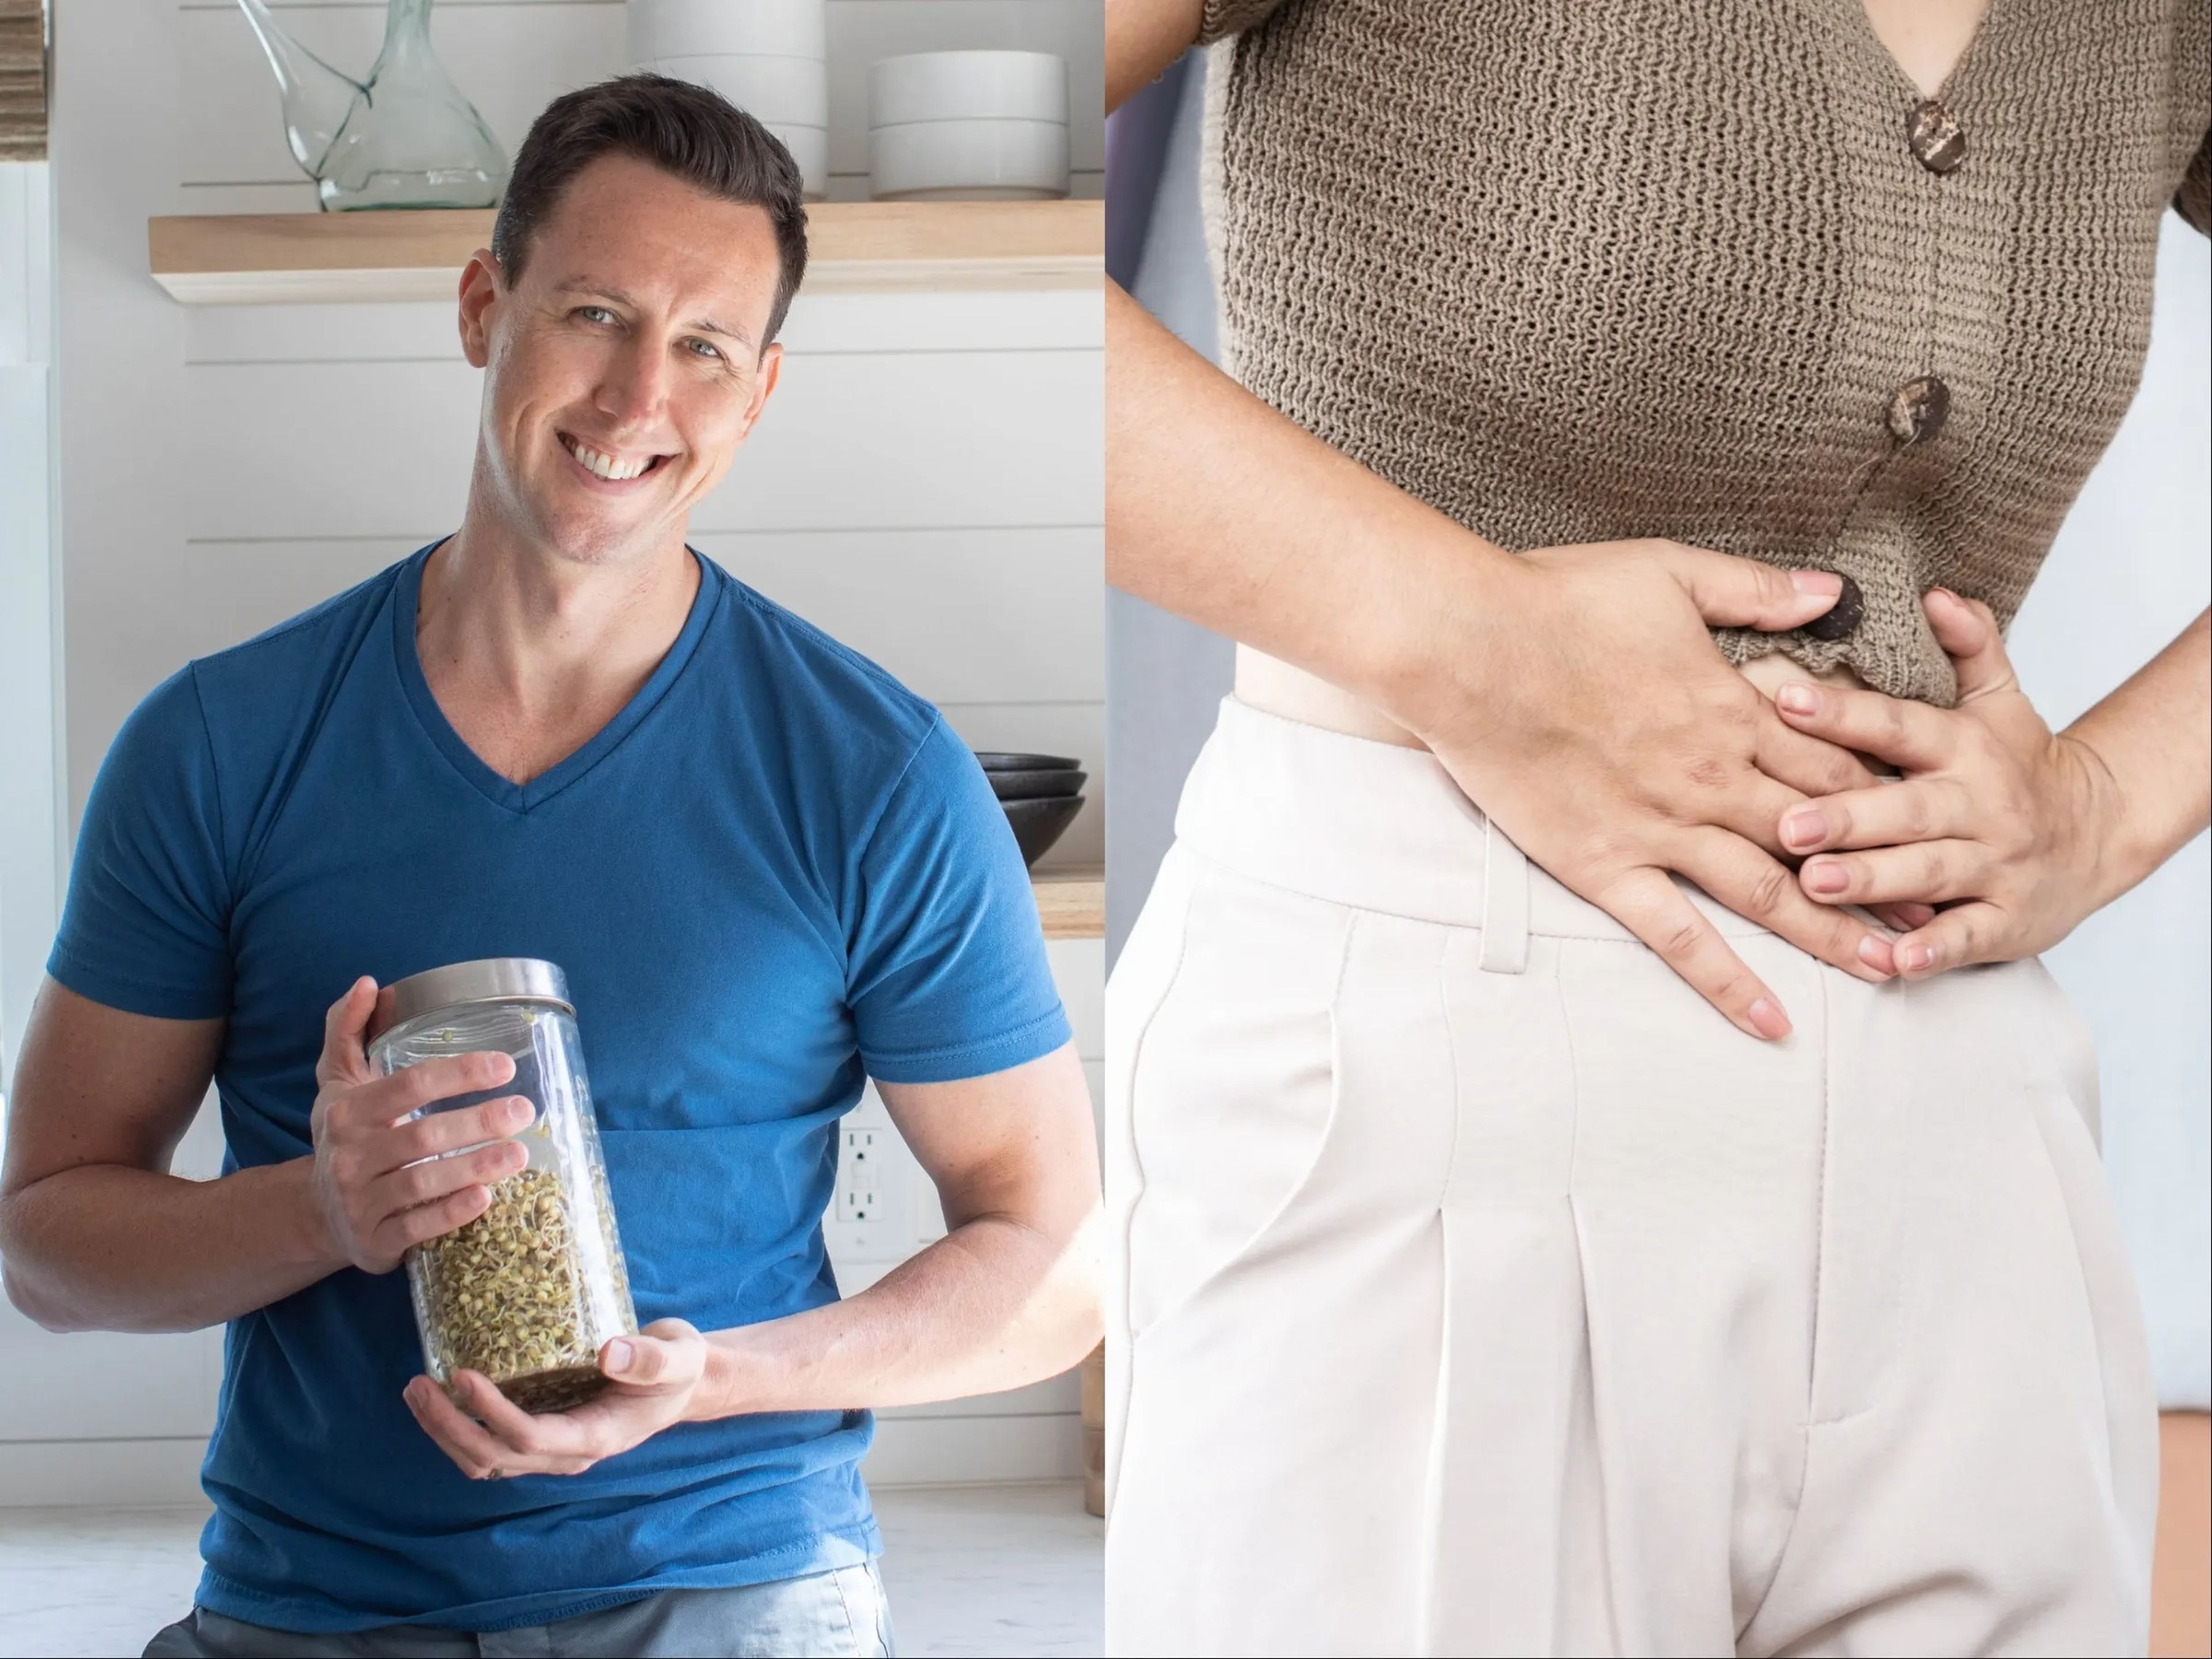 El doctor Will Bulsiewicz comparte 3 signos de problemas intestinales.